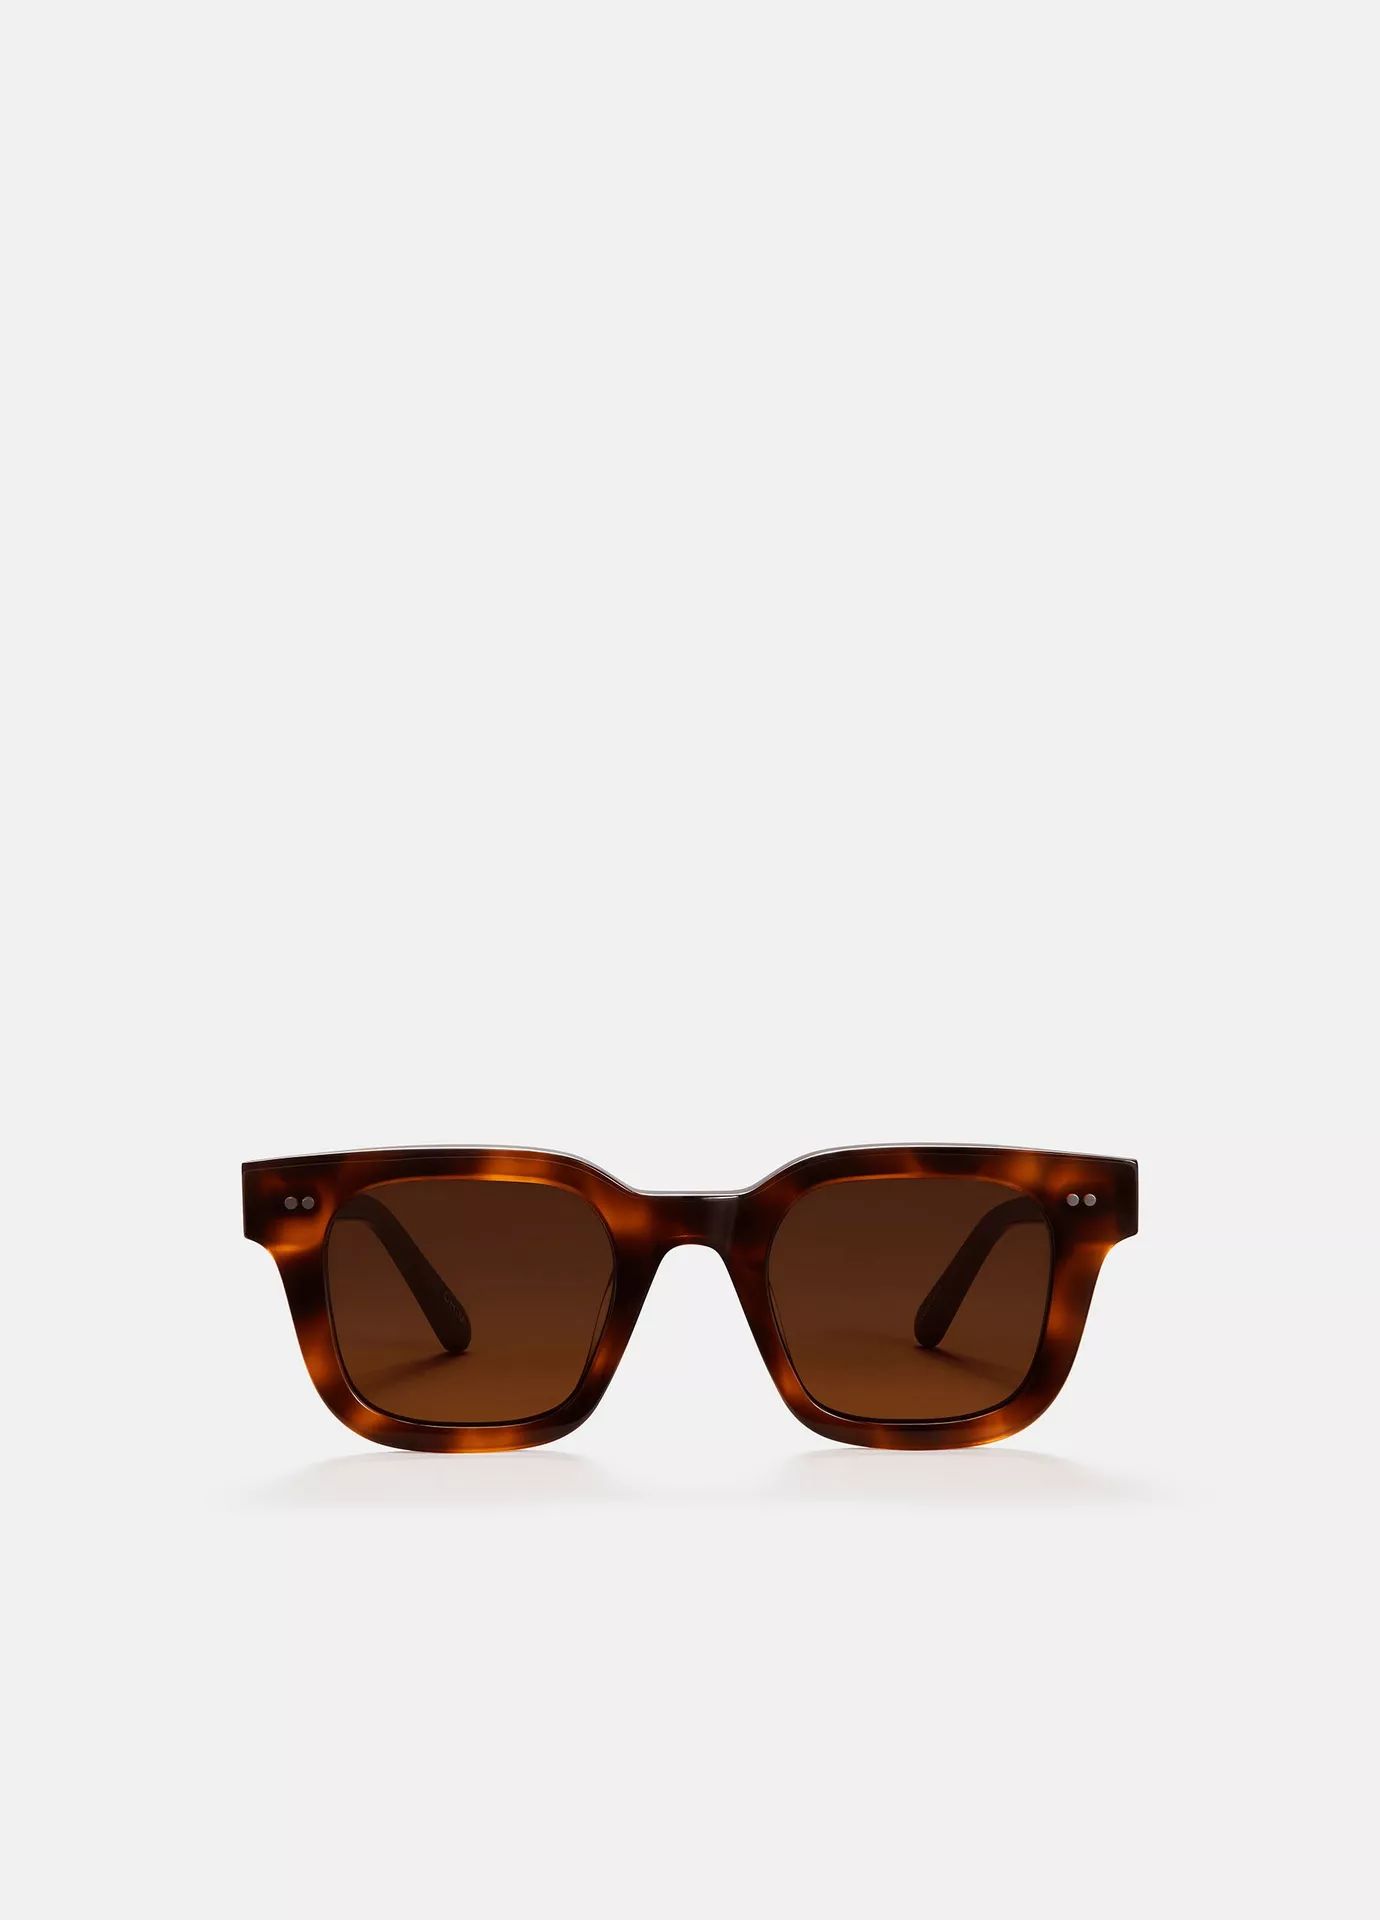 Chimi 04 Sunglasses | Vince LLC